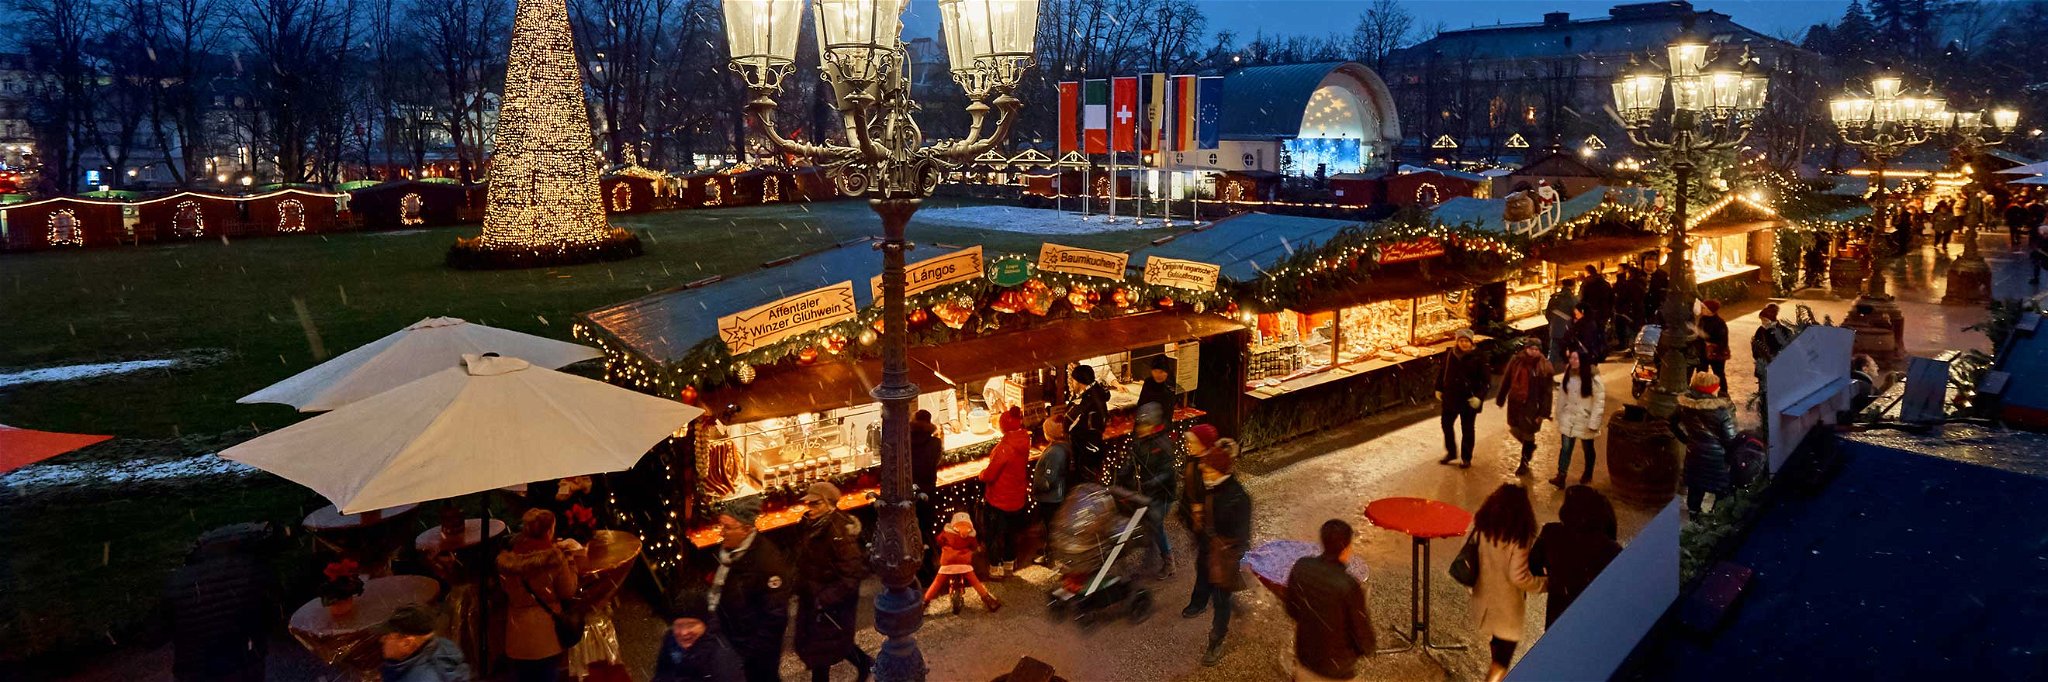 Der Christkindelsmarkt in Baden-Baden hat bis 1. Januar 2020 geöffnet.